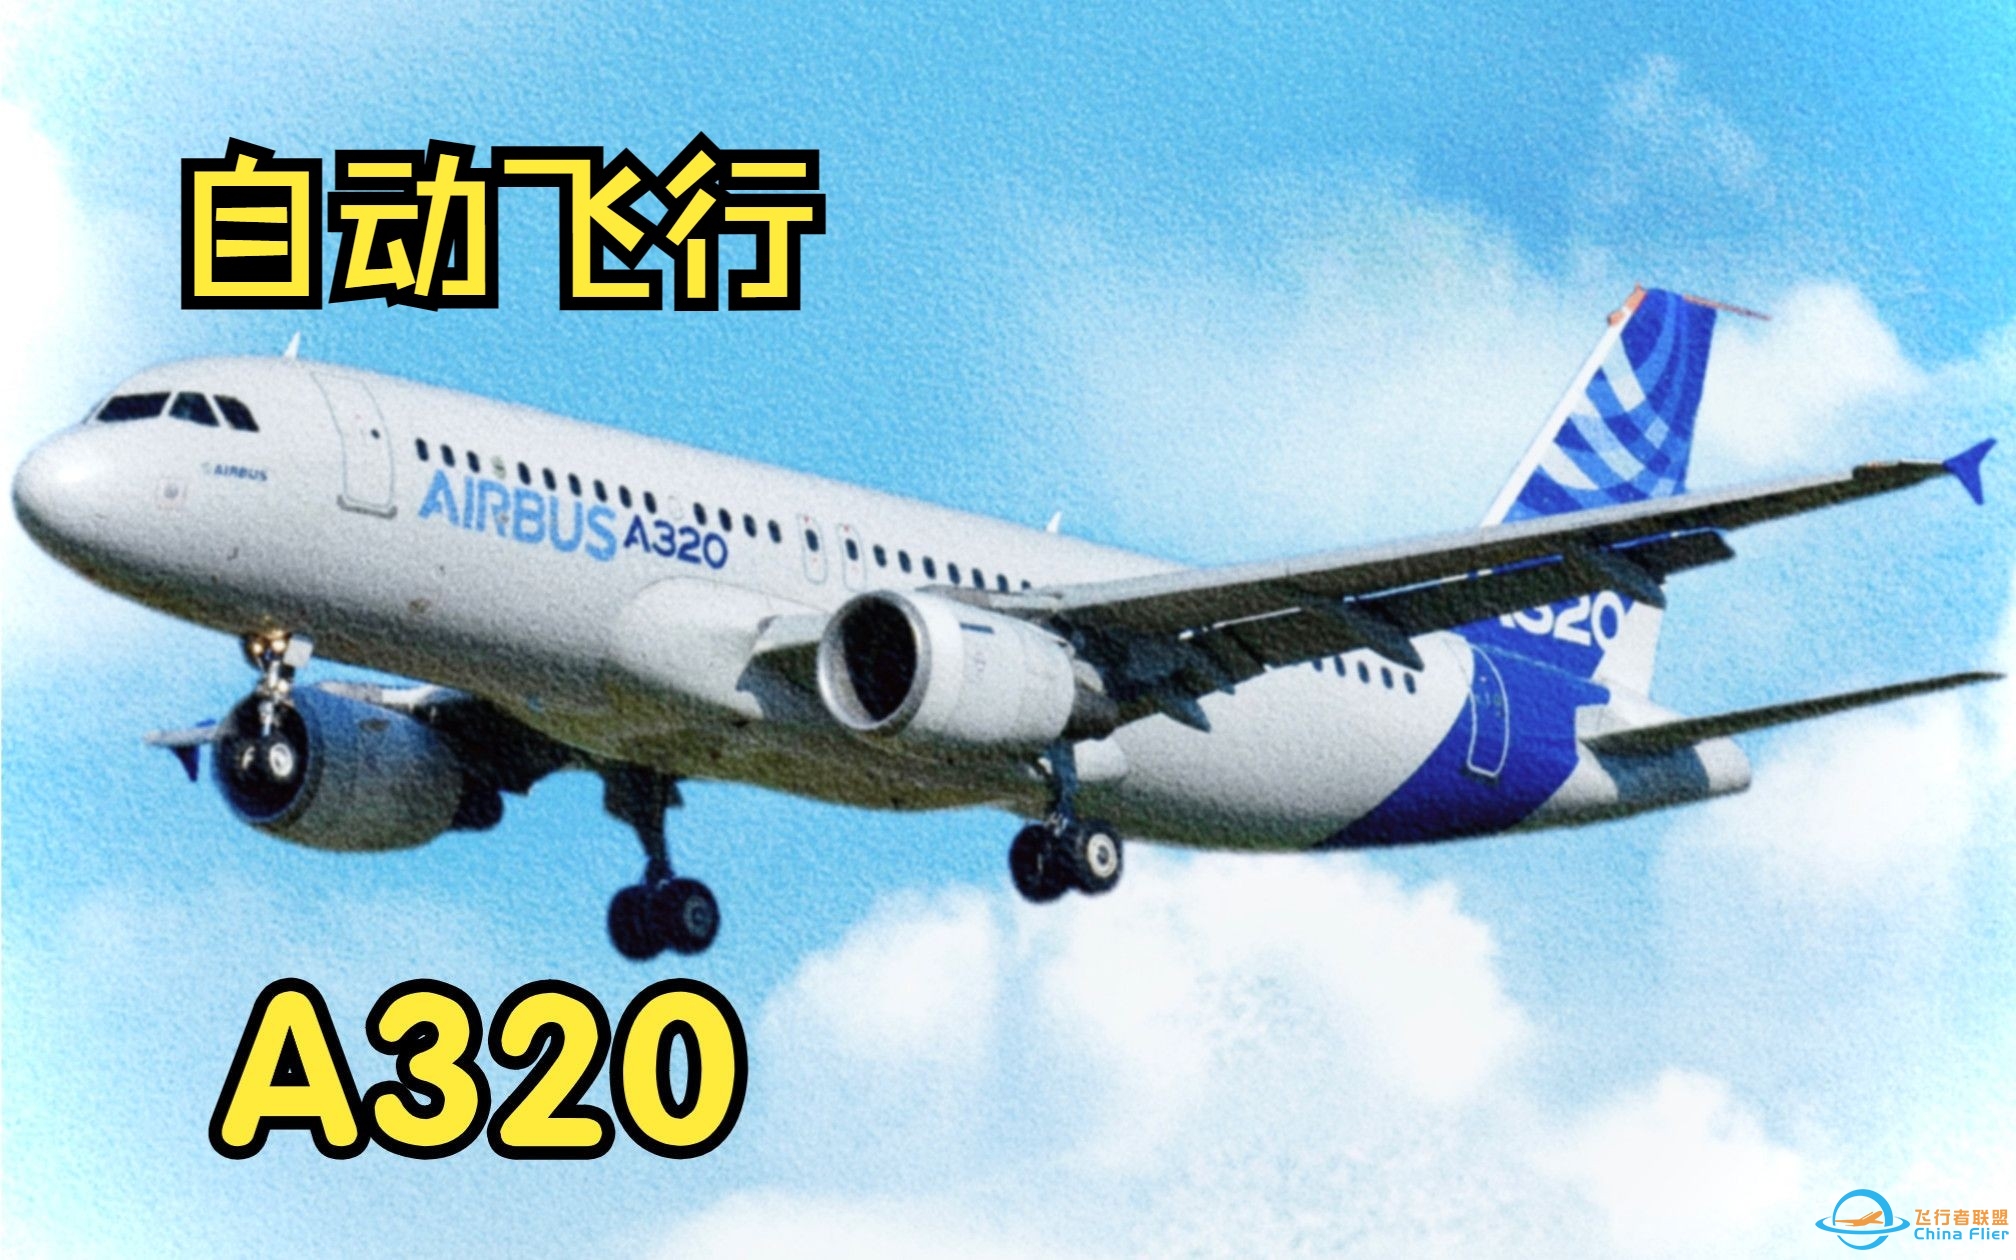 【飞行模拟从零学习空客A320】8.自动飞行系统-203 